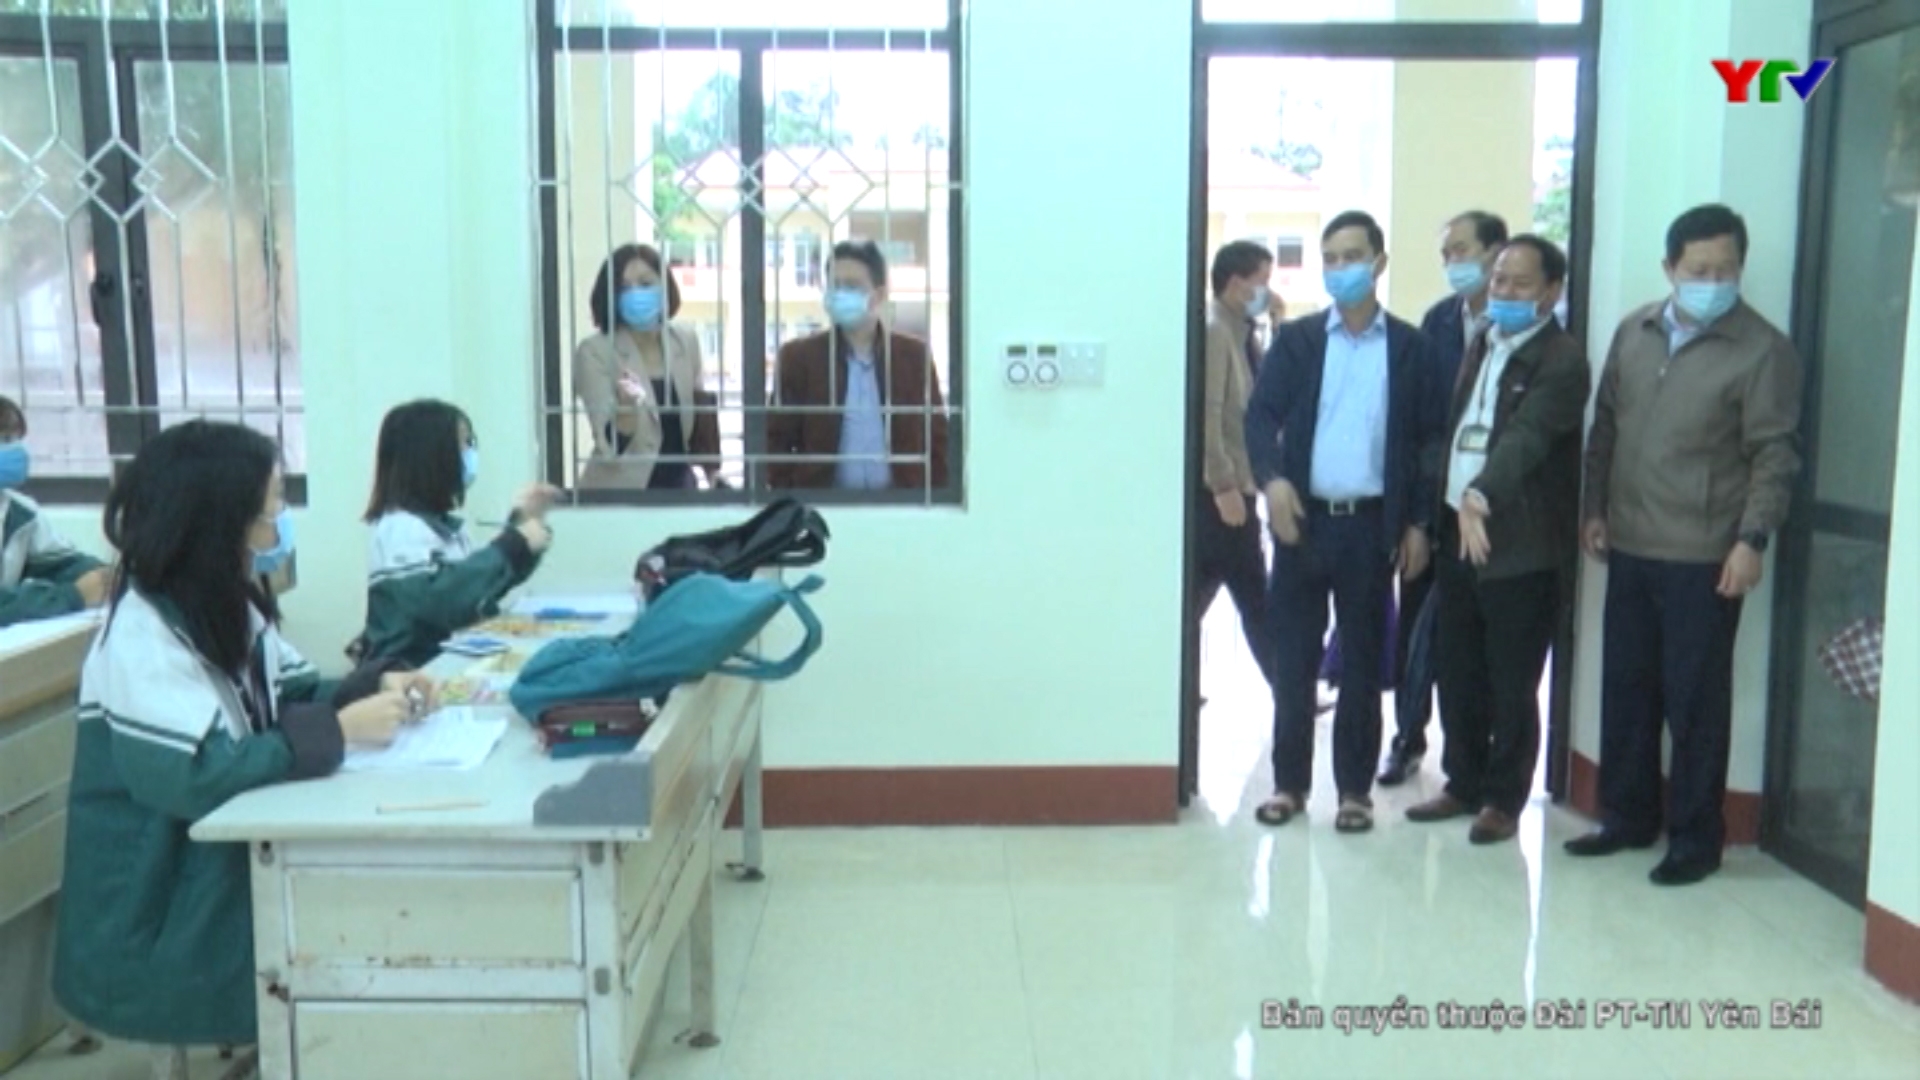 Đồng chí Phó Chủ tịch UBND tỉnh Dương Văn Tiến kiểm tra các trường học tại huyện Trấn Yên